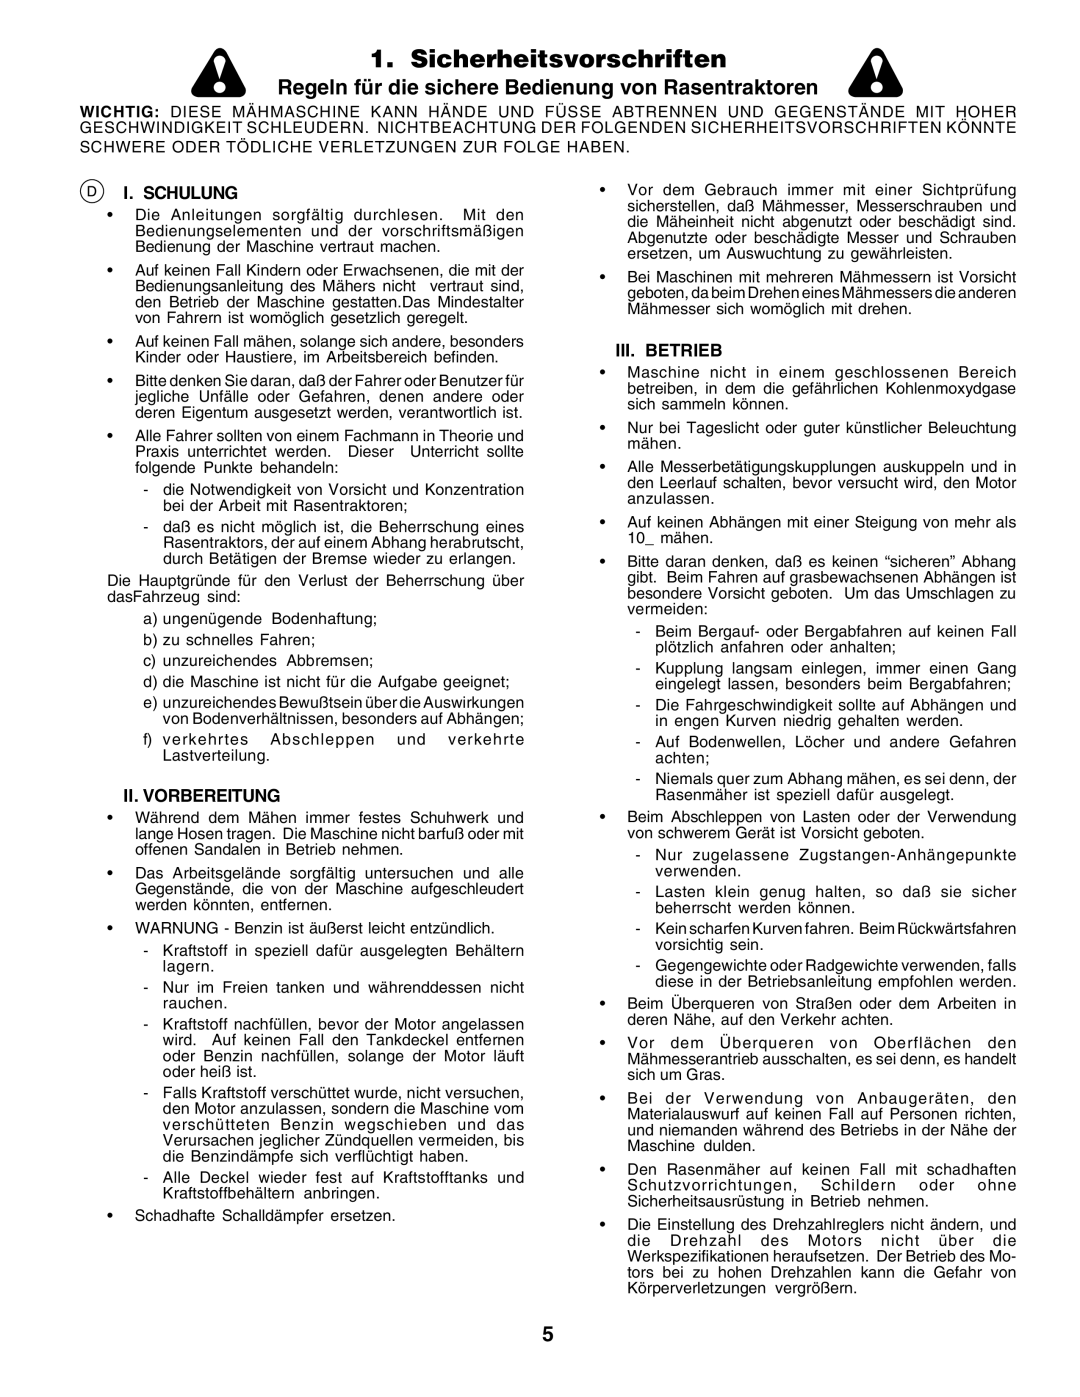 Husqvarna GTH250 Sicherheitsvorschriften, Regeln für die sichere Bedienung von Rasentraktoren, I. Schulung, Iii. Betrieb 